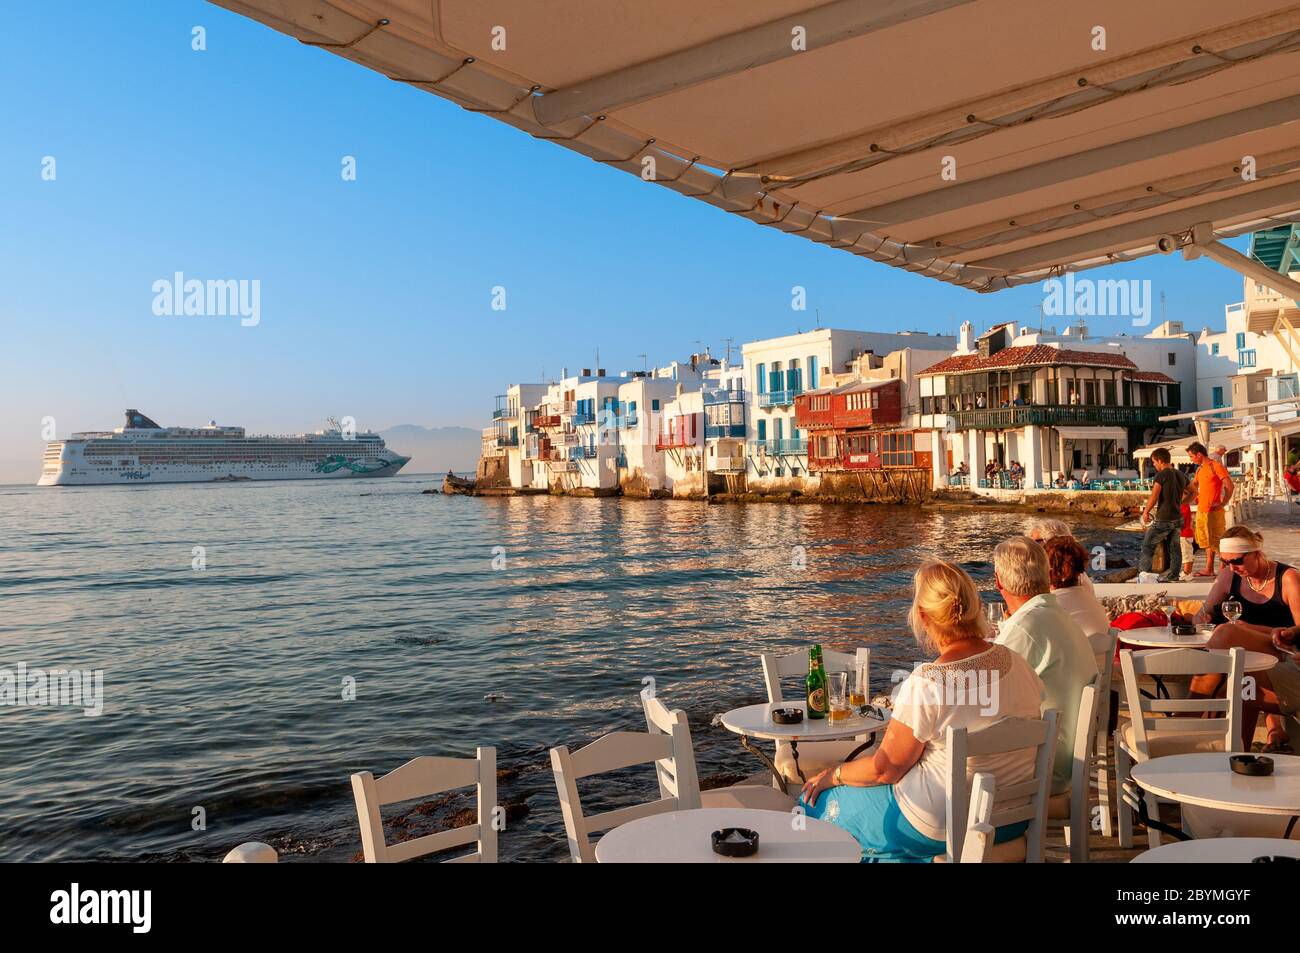 Les passagers des navires de croisière à bord de l'eau restaurant à la petite Venise de Mykonos, Grèce Banque D'Images